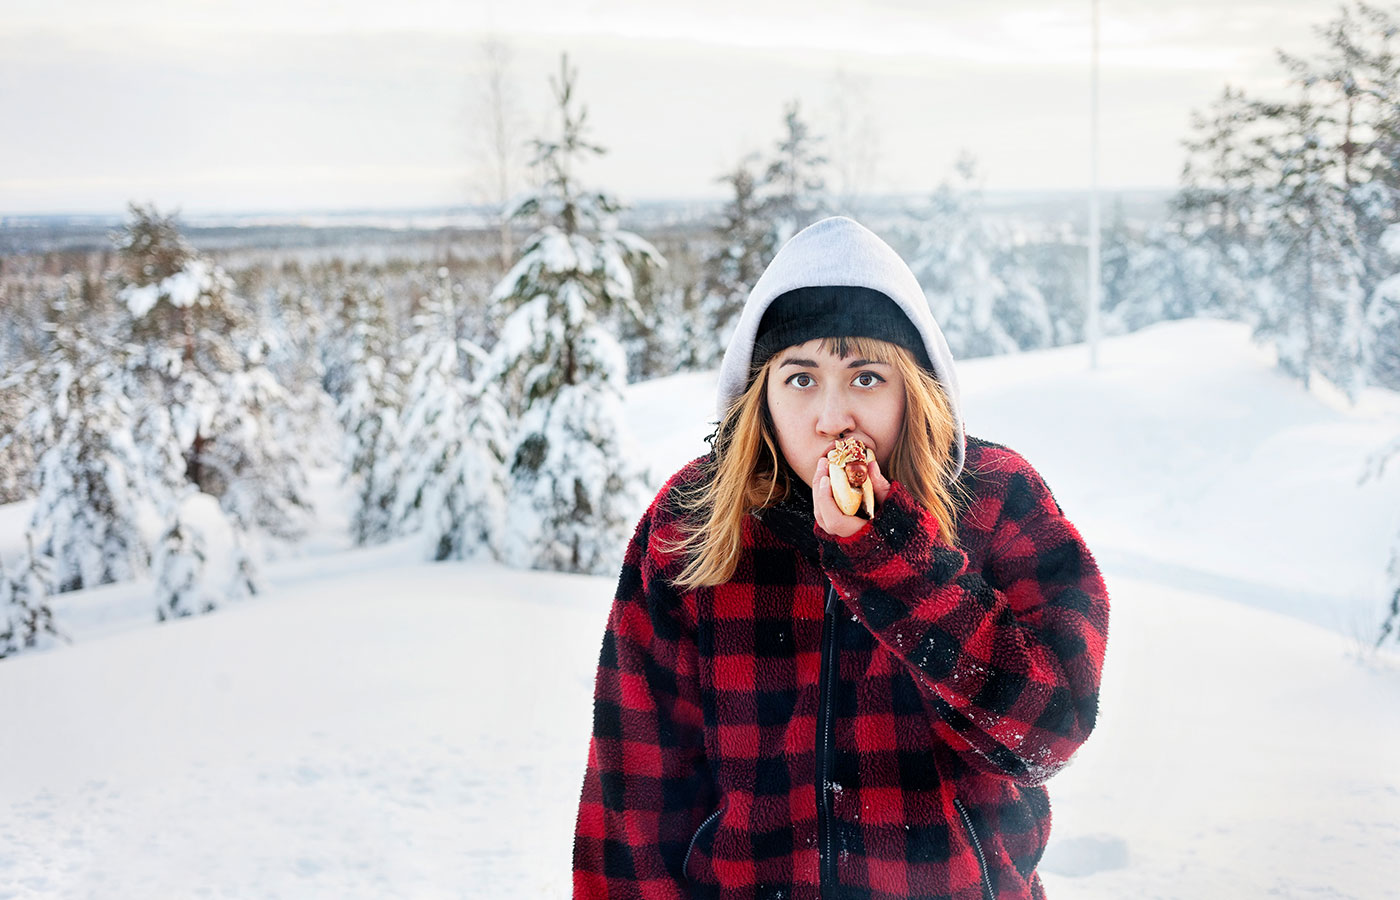 A girl eating sausage among the snowy mountains Image ID: scandinav_eq6p